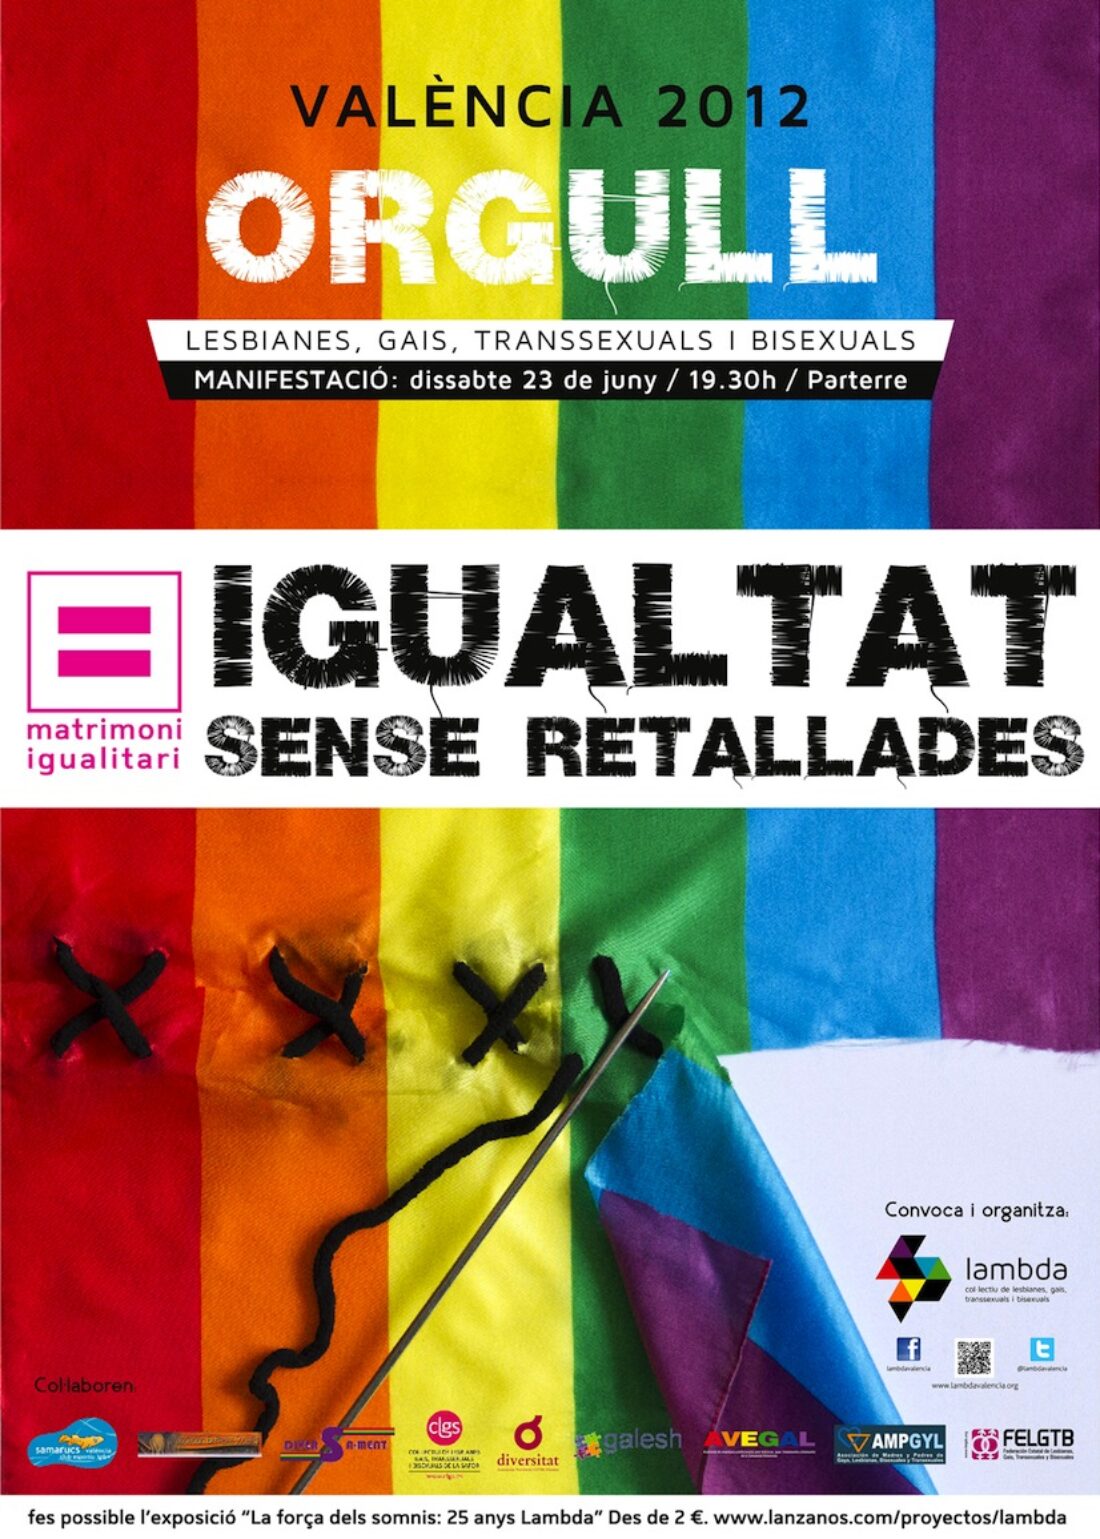 Orgullo LGTB 2012 en Valencia: Matrimonio Igualitario, Igualdad sin recortes